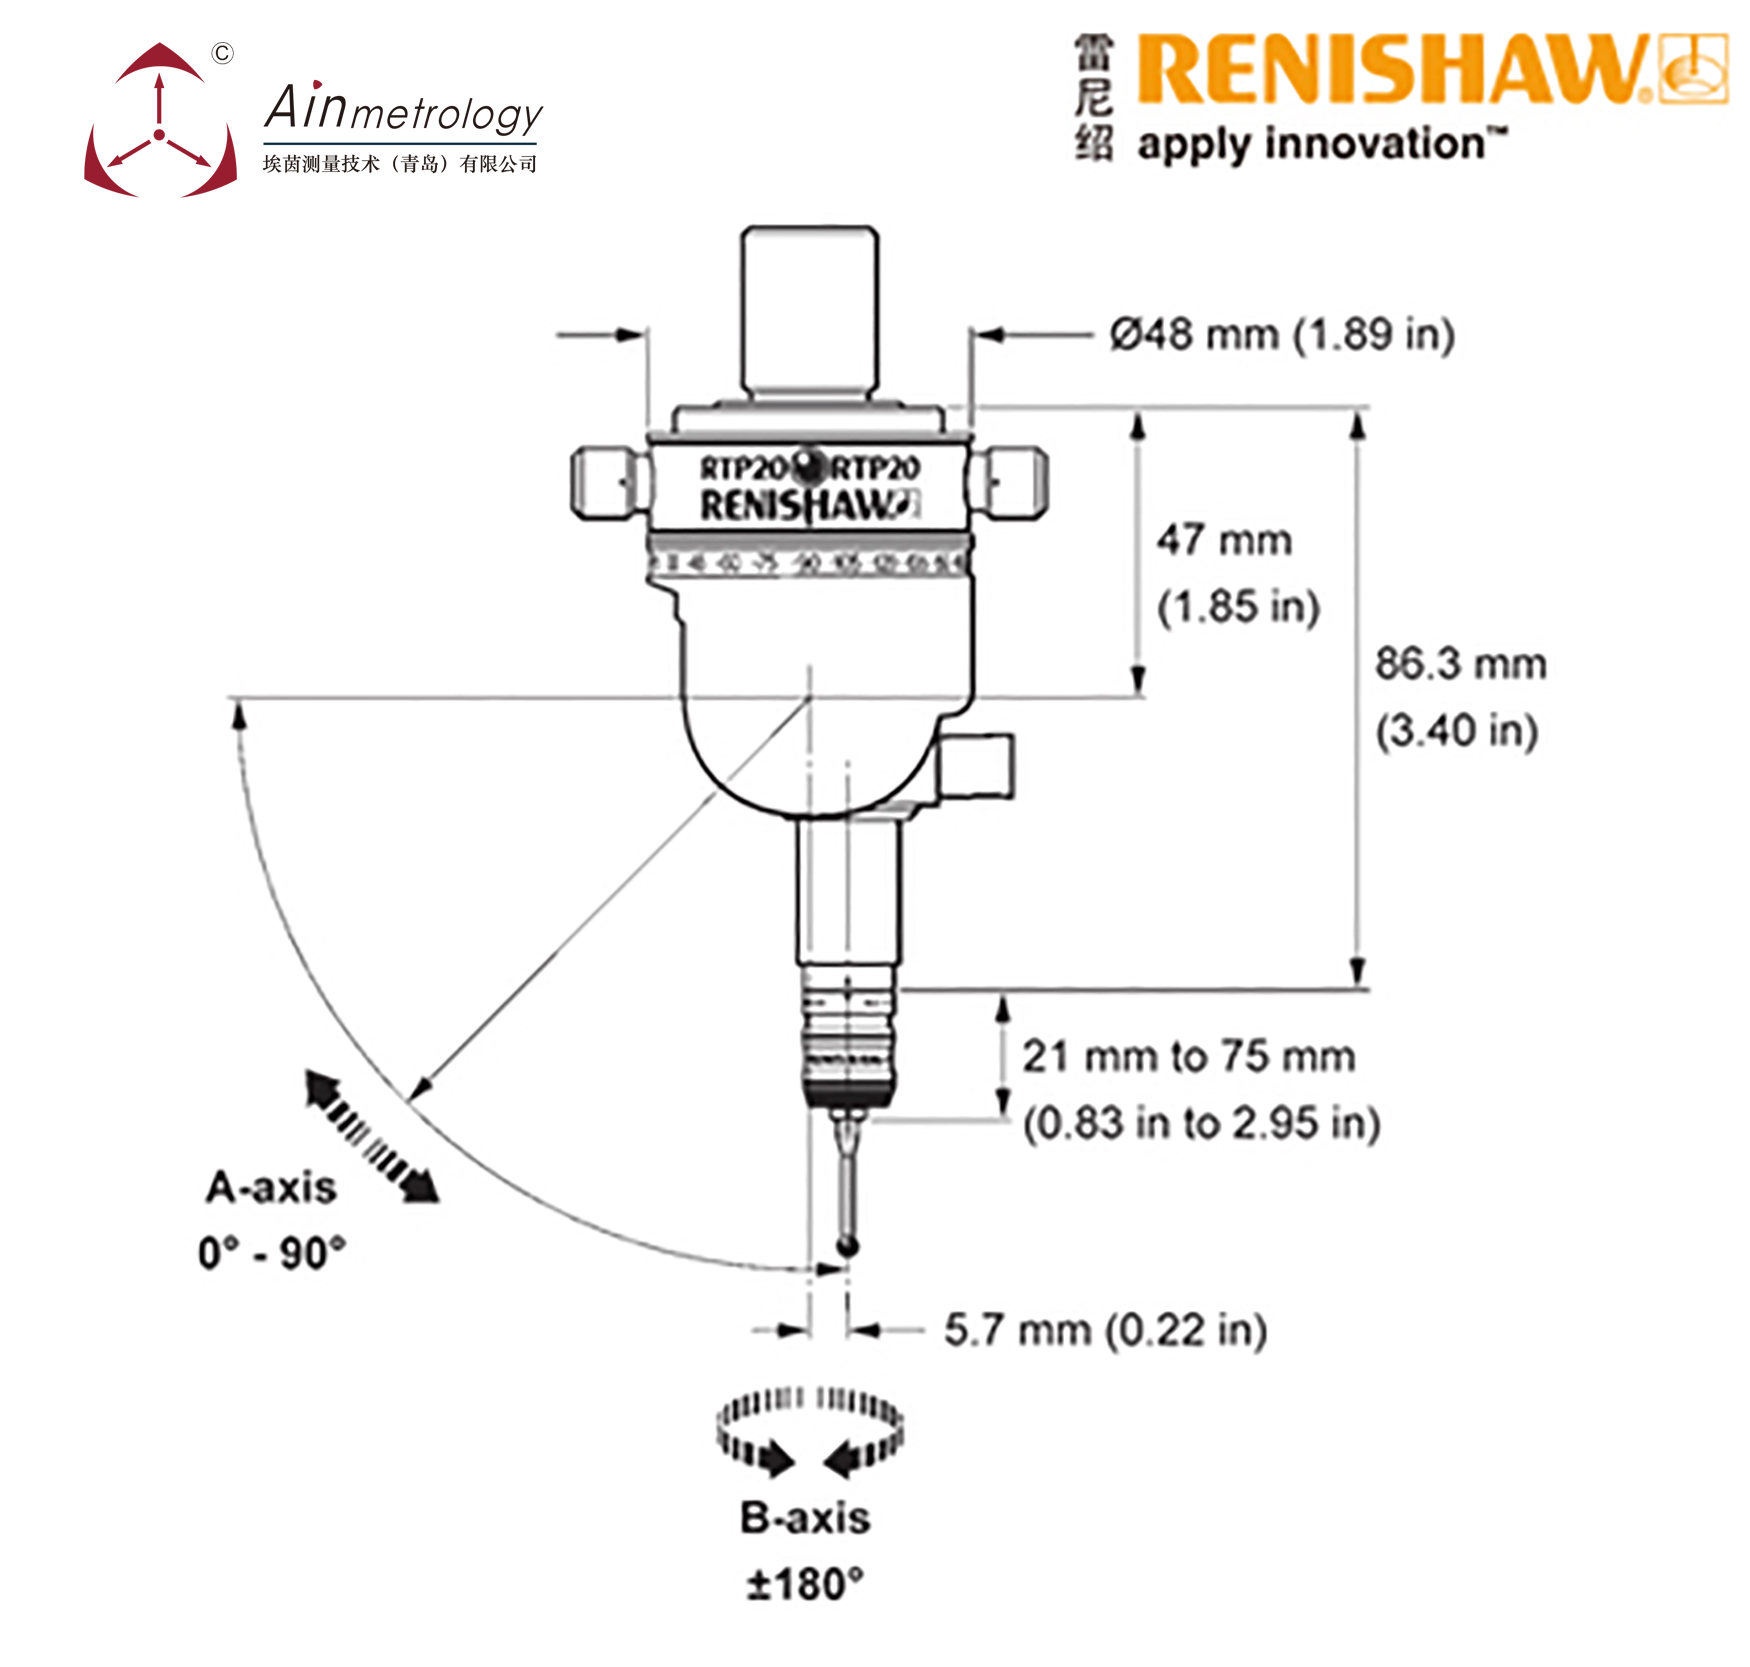  RENISHAW RTP20 半自动三坐标测头座